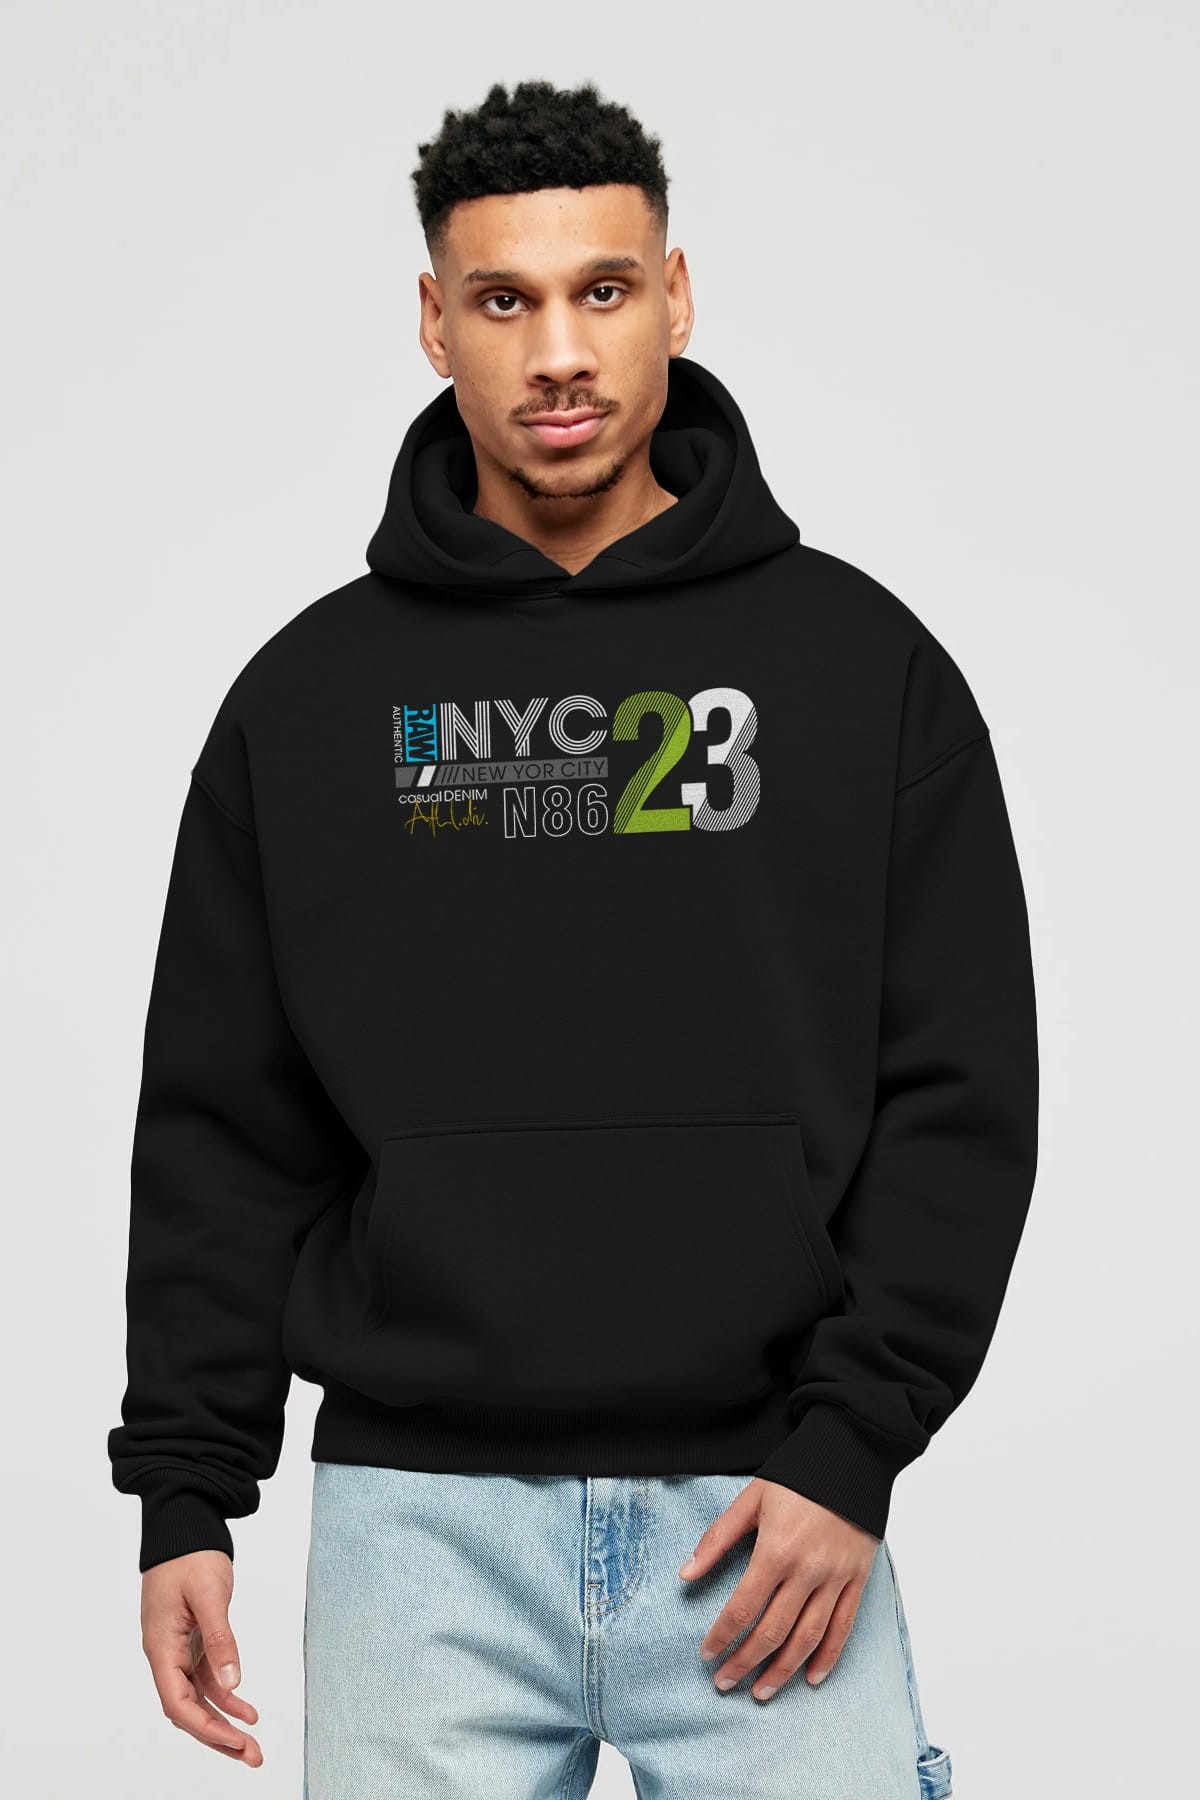 NYC 23 Ön Baskılı Oversize Hoodie Kapüşonlu Sweatshirt Erkek Kadın Unisex